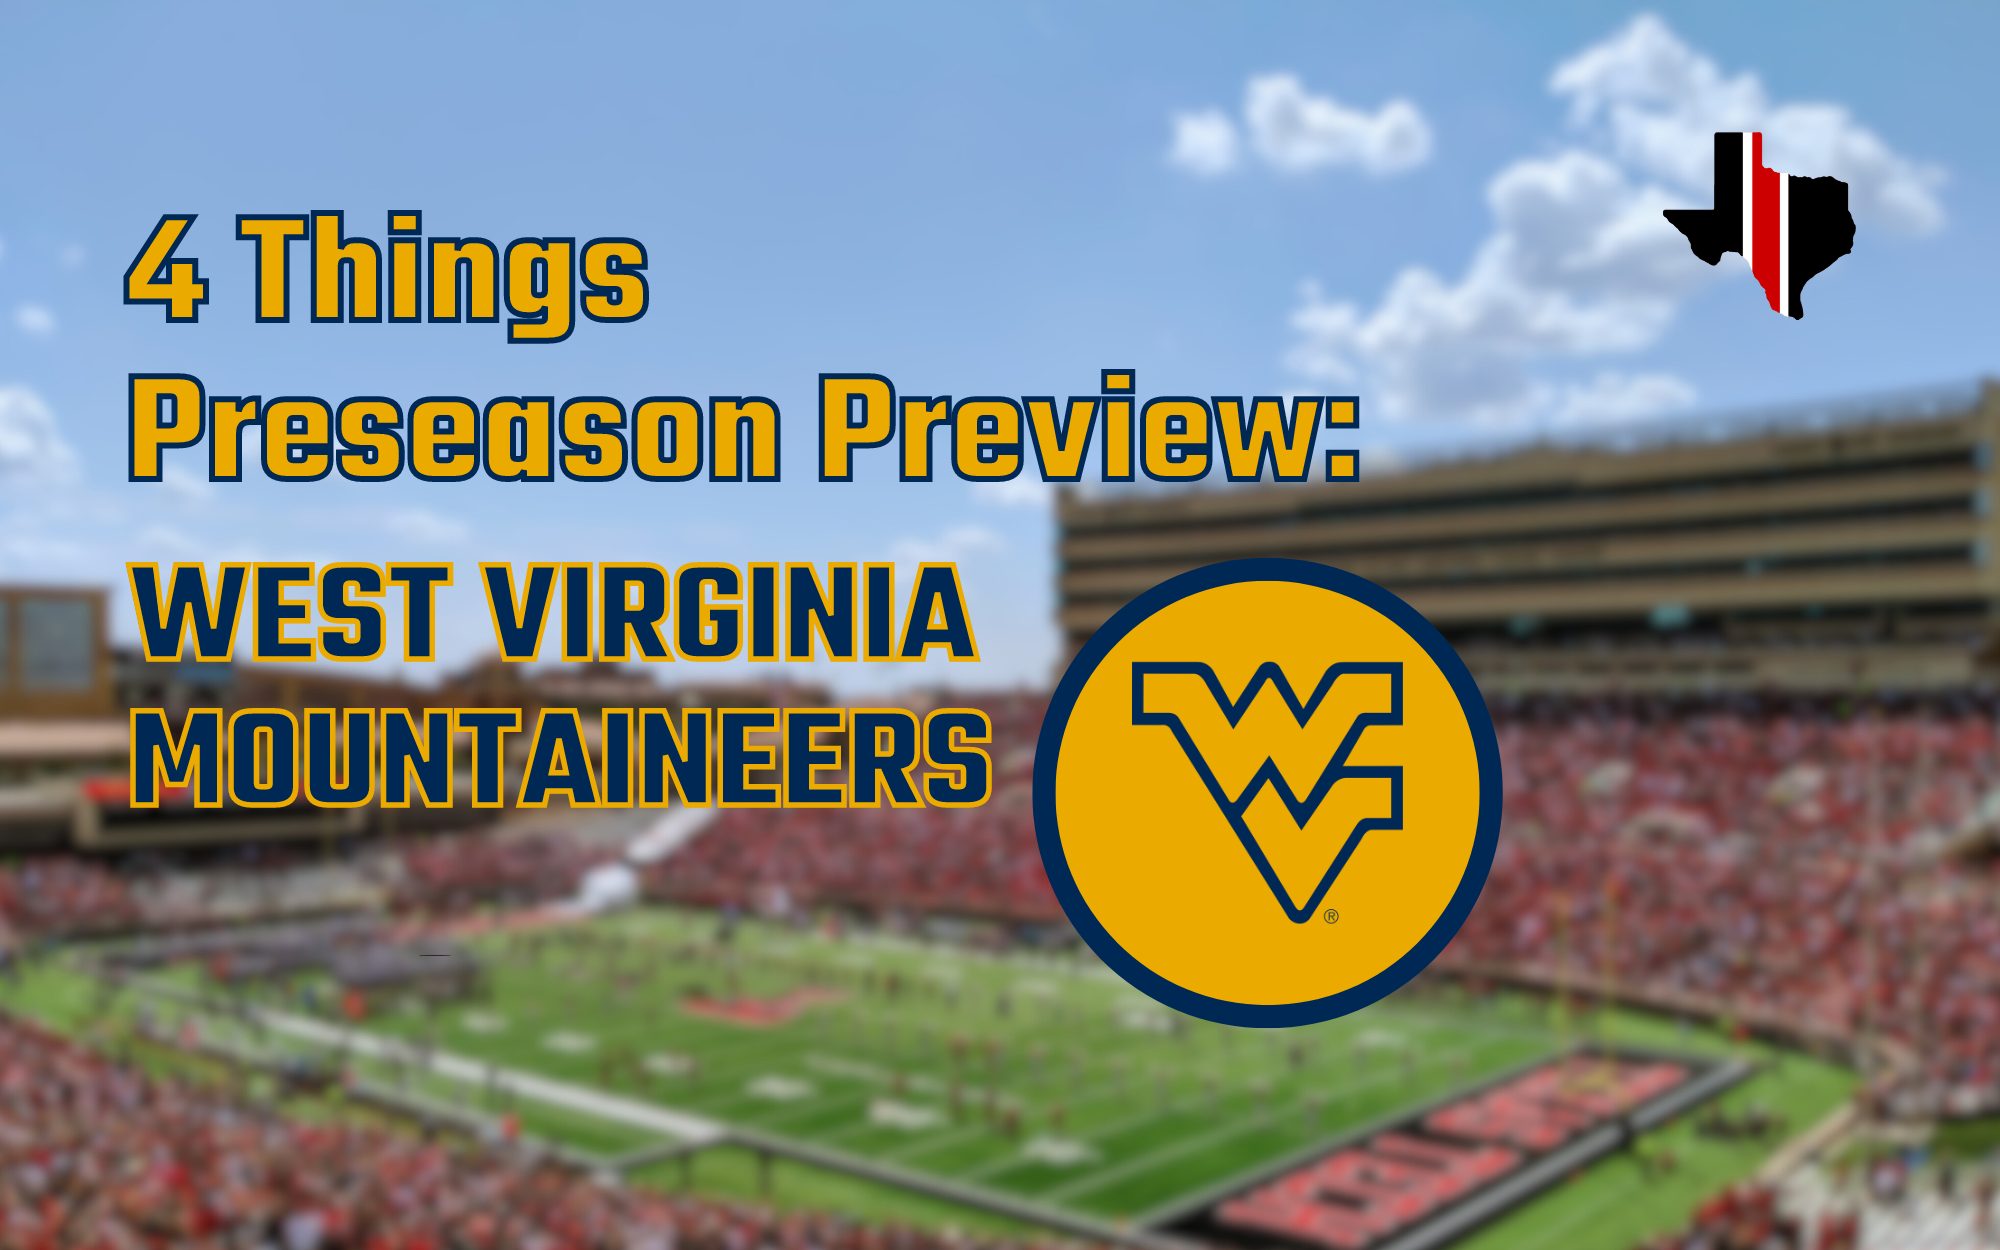 4 Things Preseason Preview: West Virginia Mountaineers